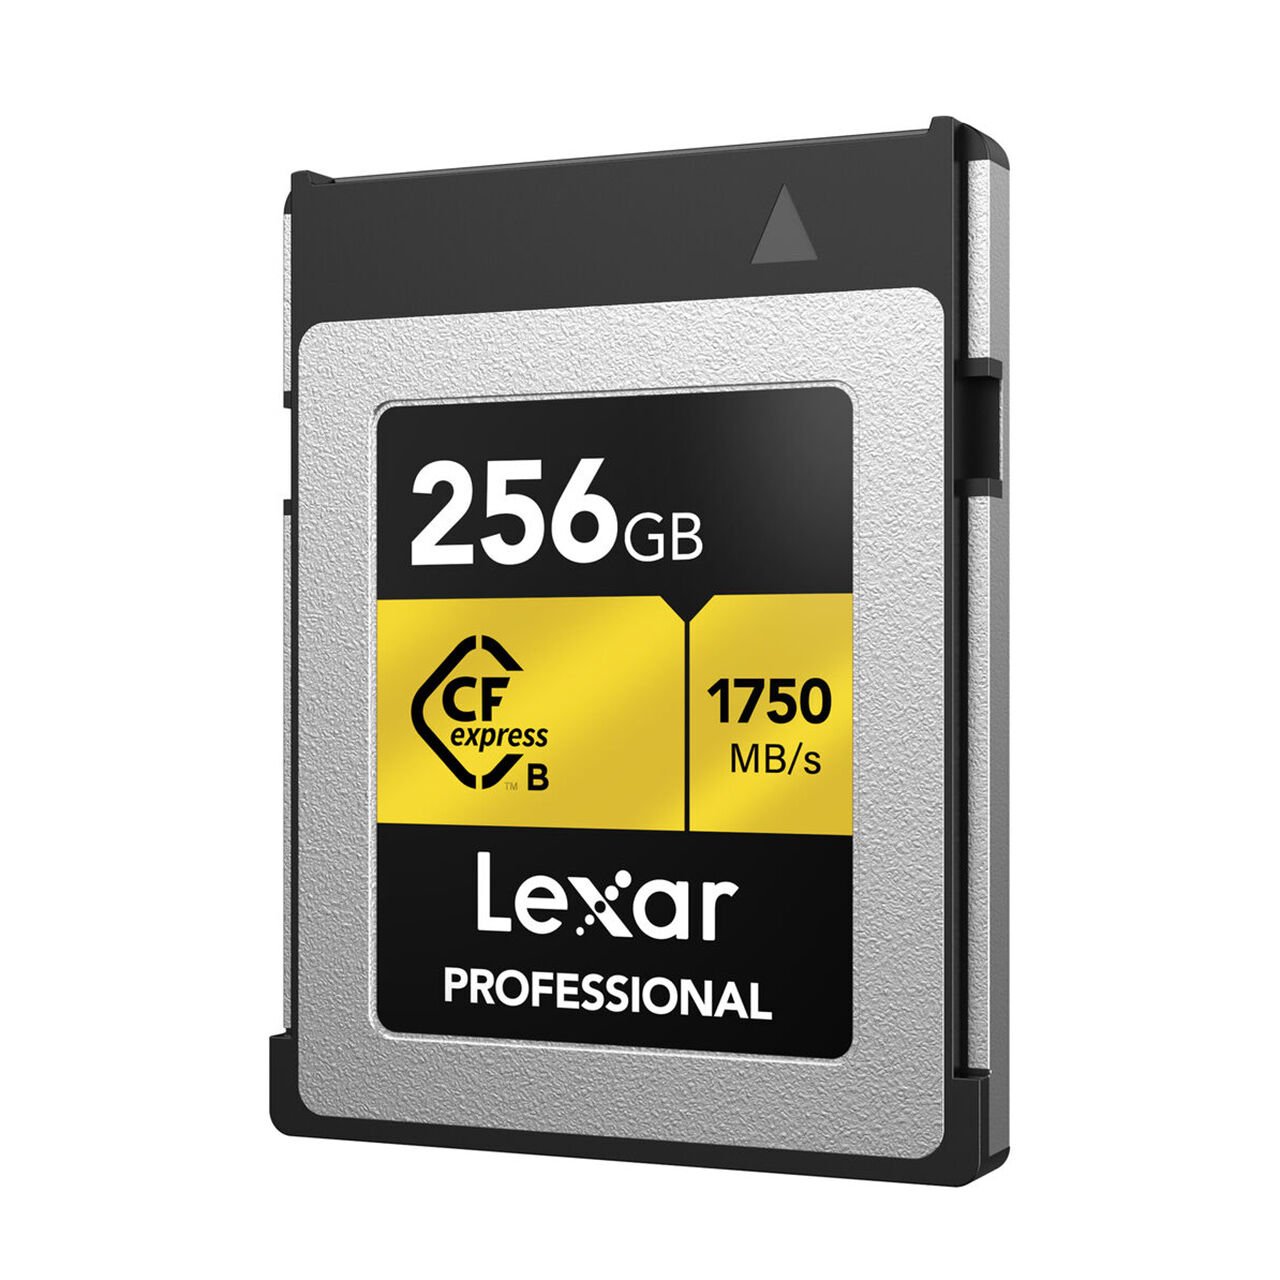 Lexar 256GB Professional CFexpress Type-B 1750MBsn Hafıza Kartı